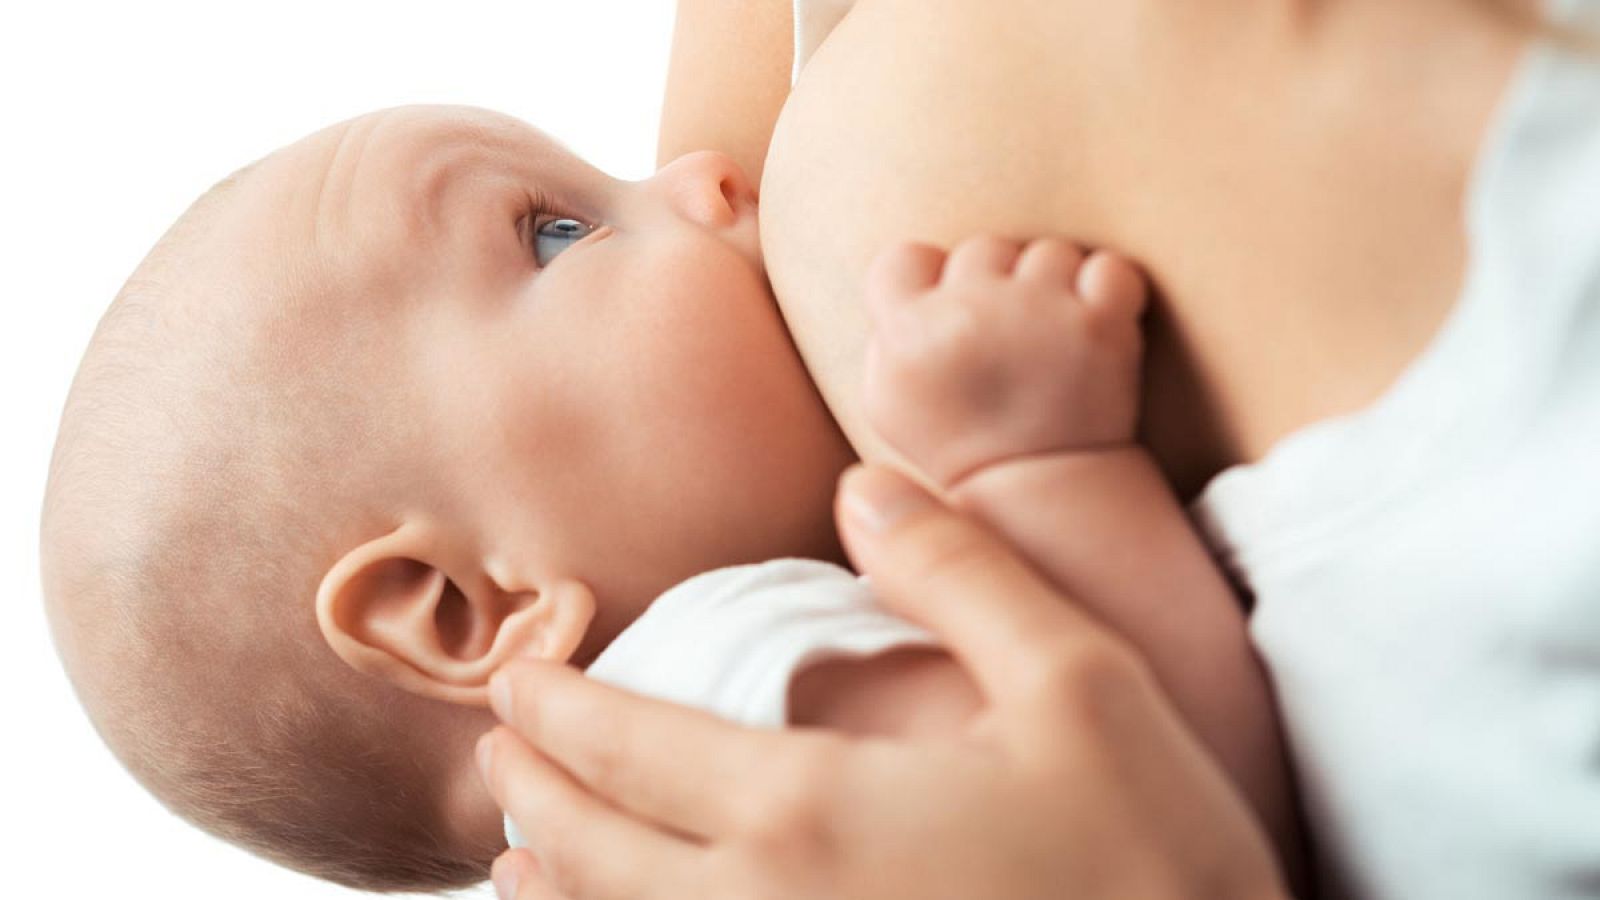 OMS-Unicef insiste en que hasta los seis meses los bebes sólo deben ingerir leche materna, y que sea una parte importante de su alimentación hasta los dos años.